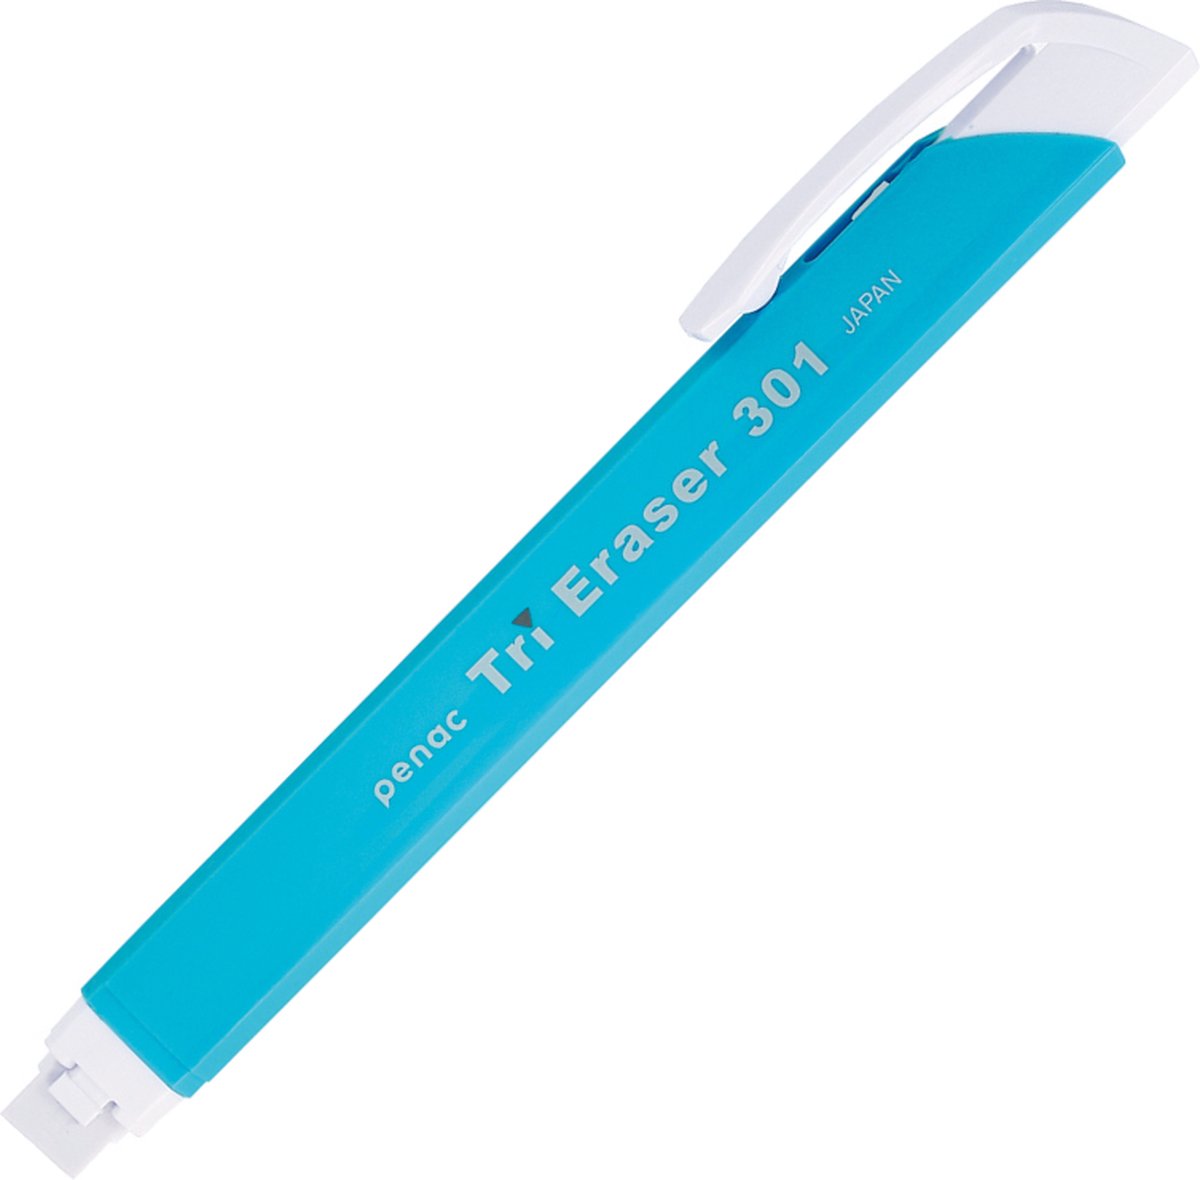 Penac Japan - Gumvulpotlood - Gum Pen - Lichtblauw - navulbaar - 8.25mm x 122mm gumpotlood - Penac